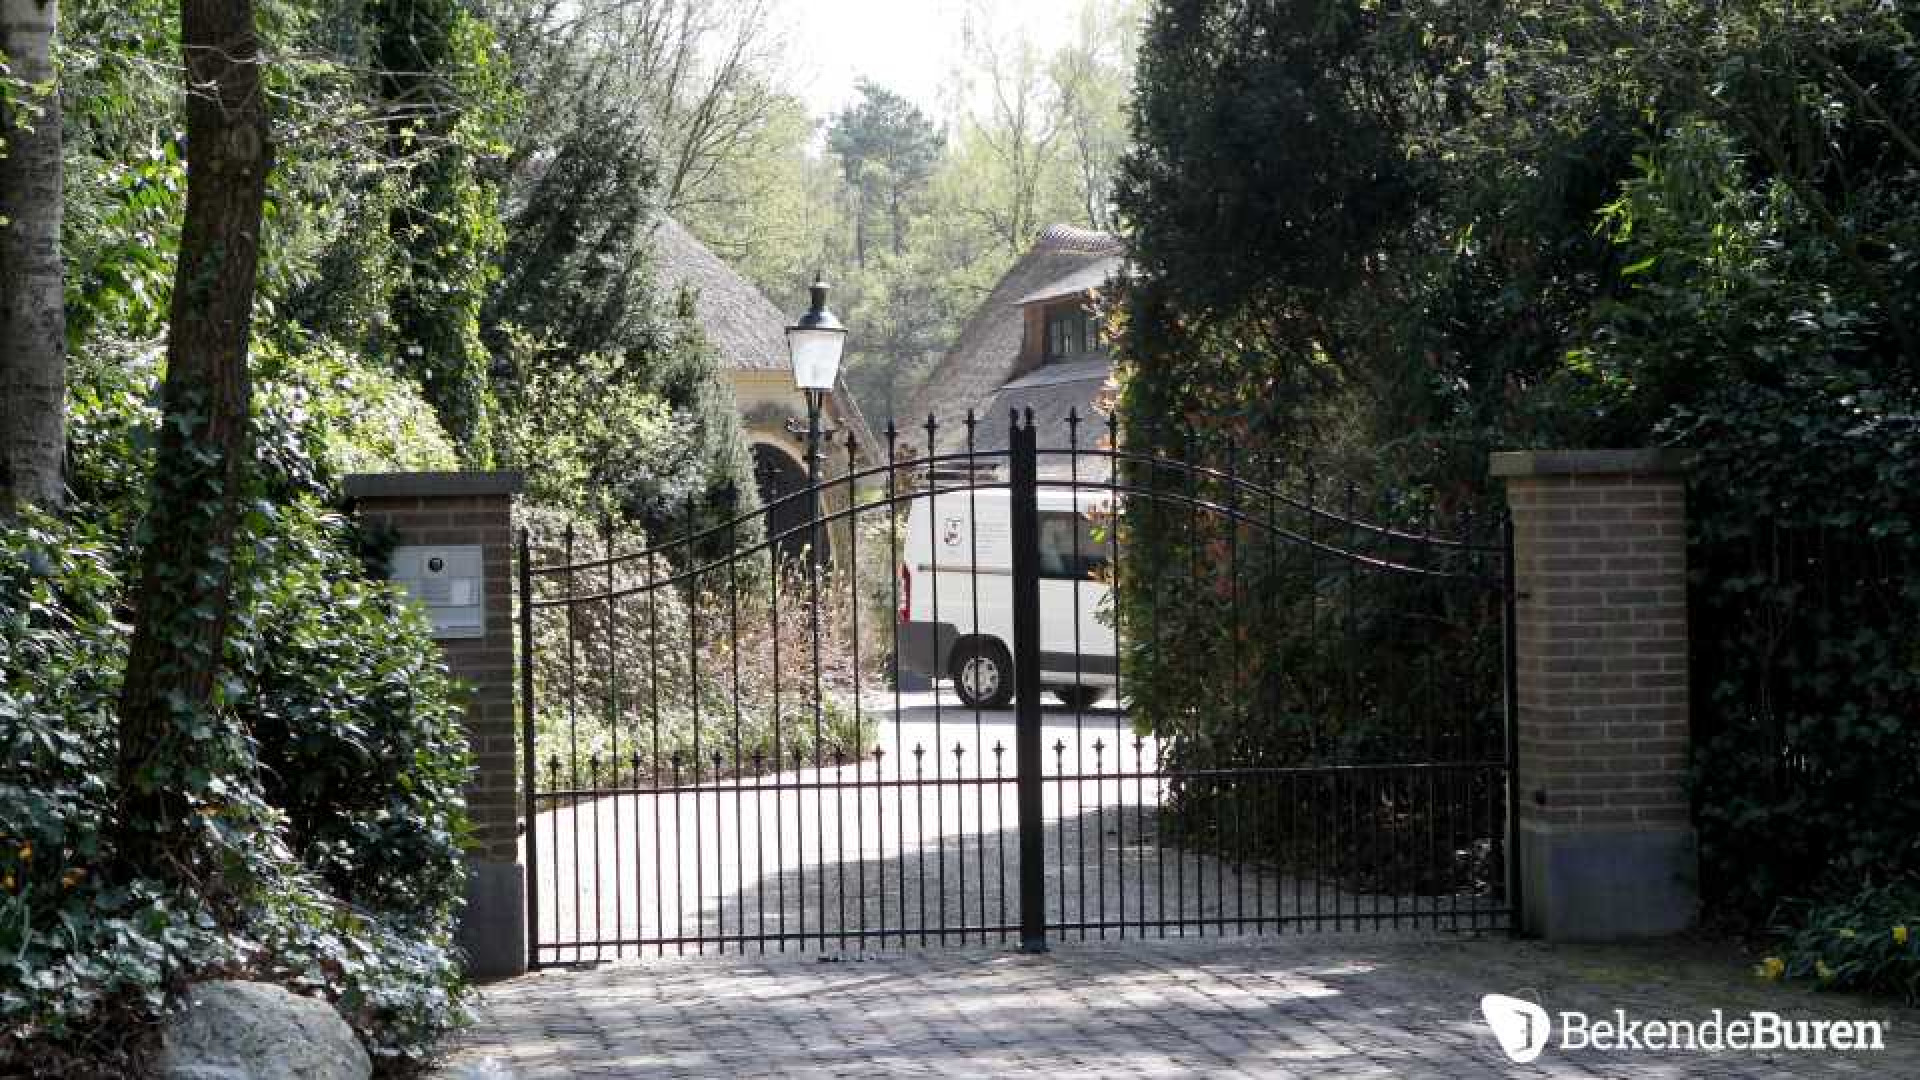 Prinses Irene koopt kapitale villa in Doorn. Zie foto's